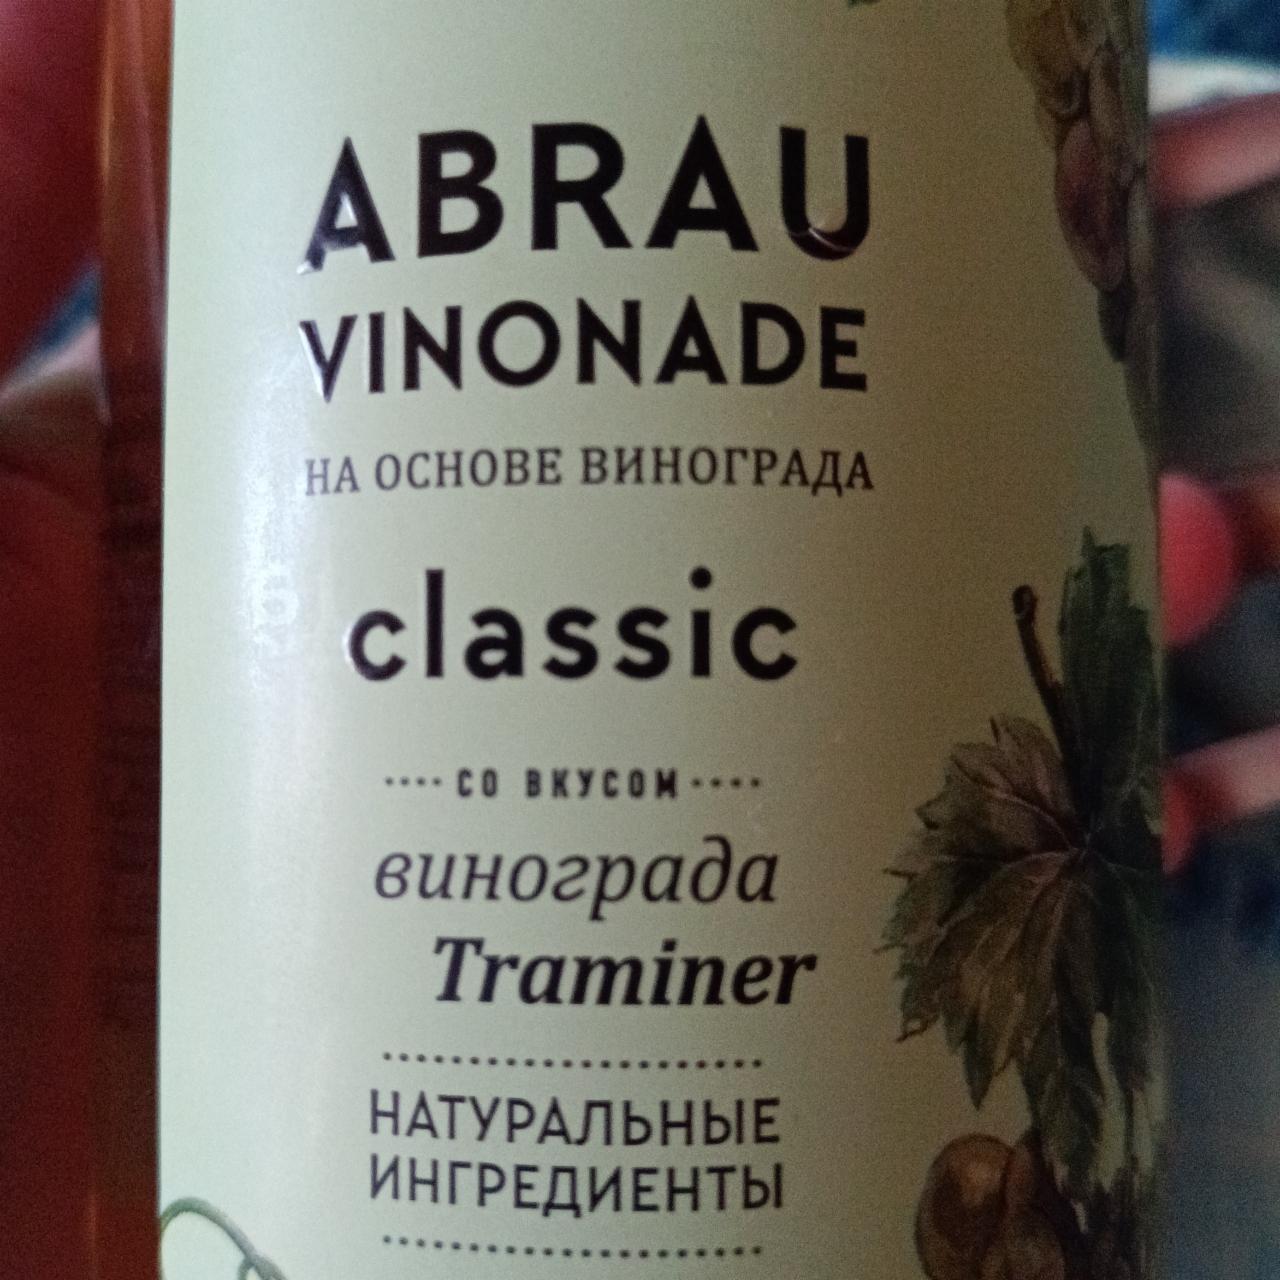 Фото - Напиток безалкогольный classic со вкусом вмнограда Traminer Abrau Vinonade